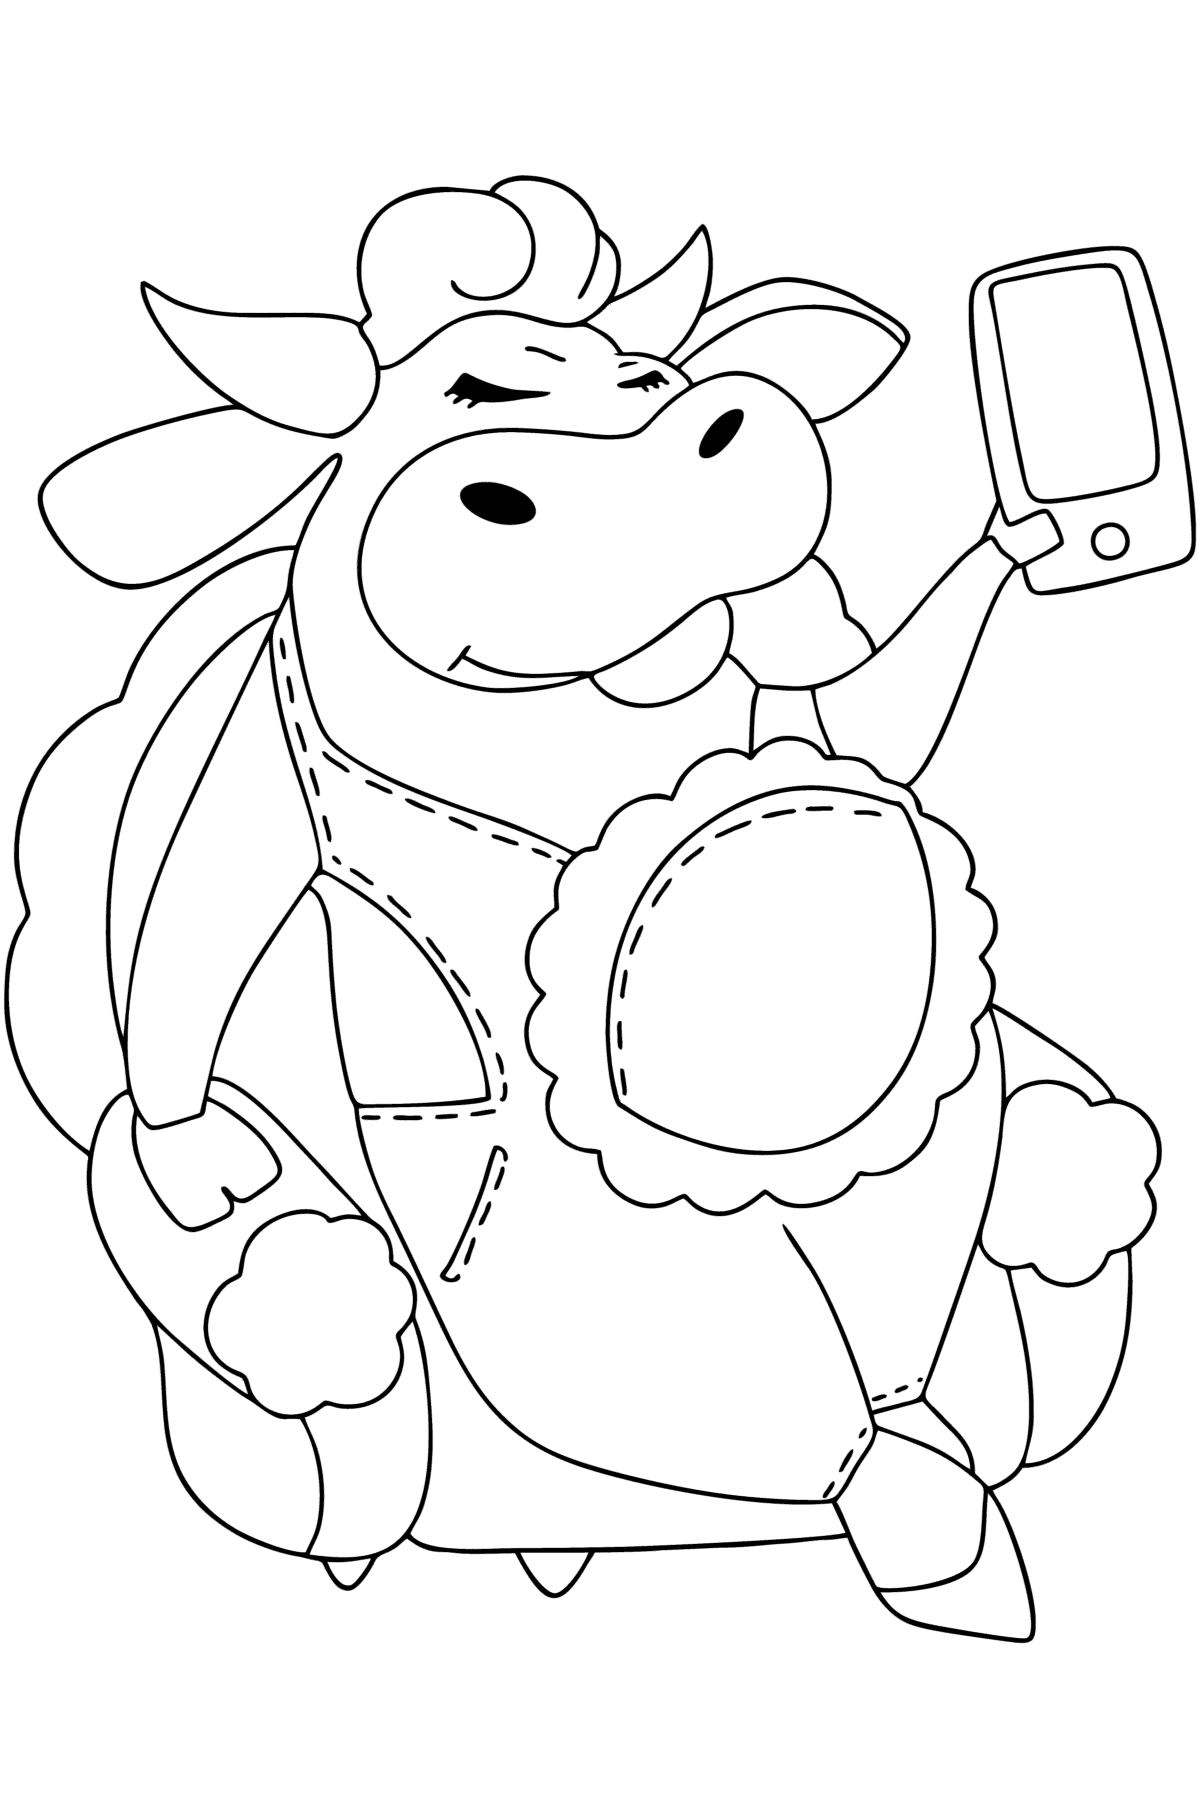 Desenho de Vaca bonita para colorir - Imagens para Colorir para Crianças